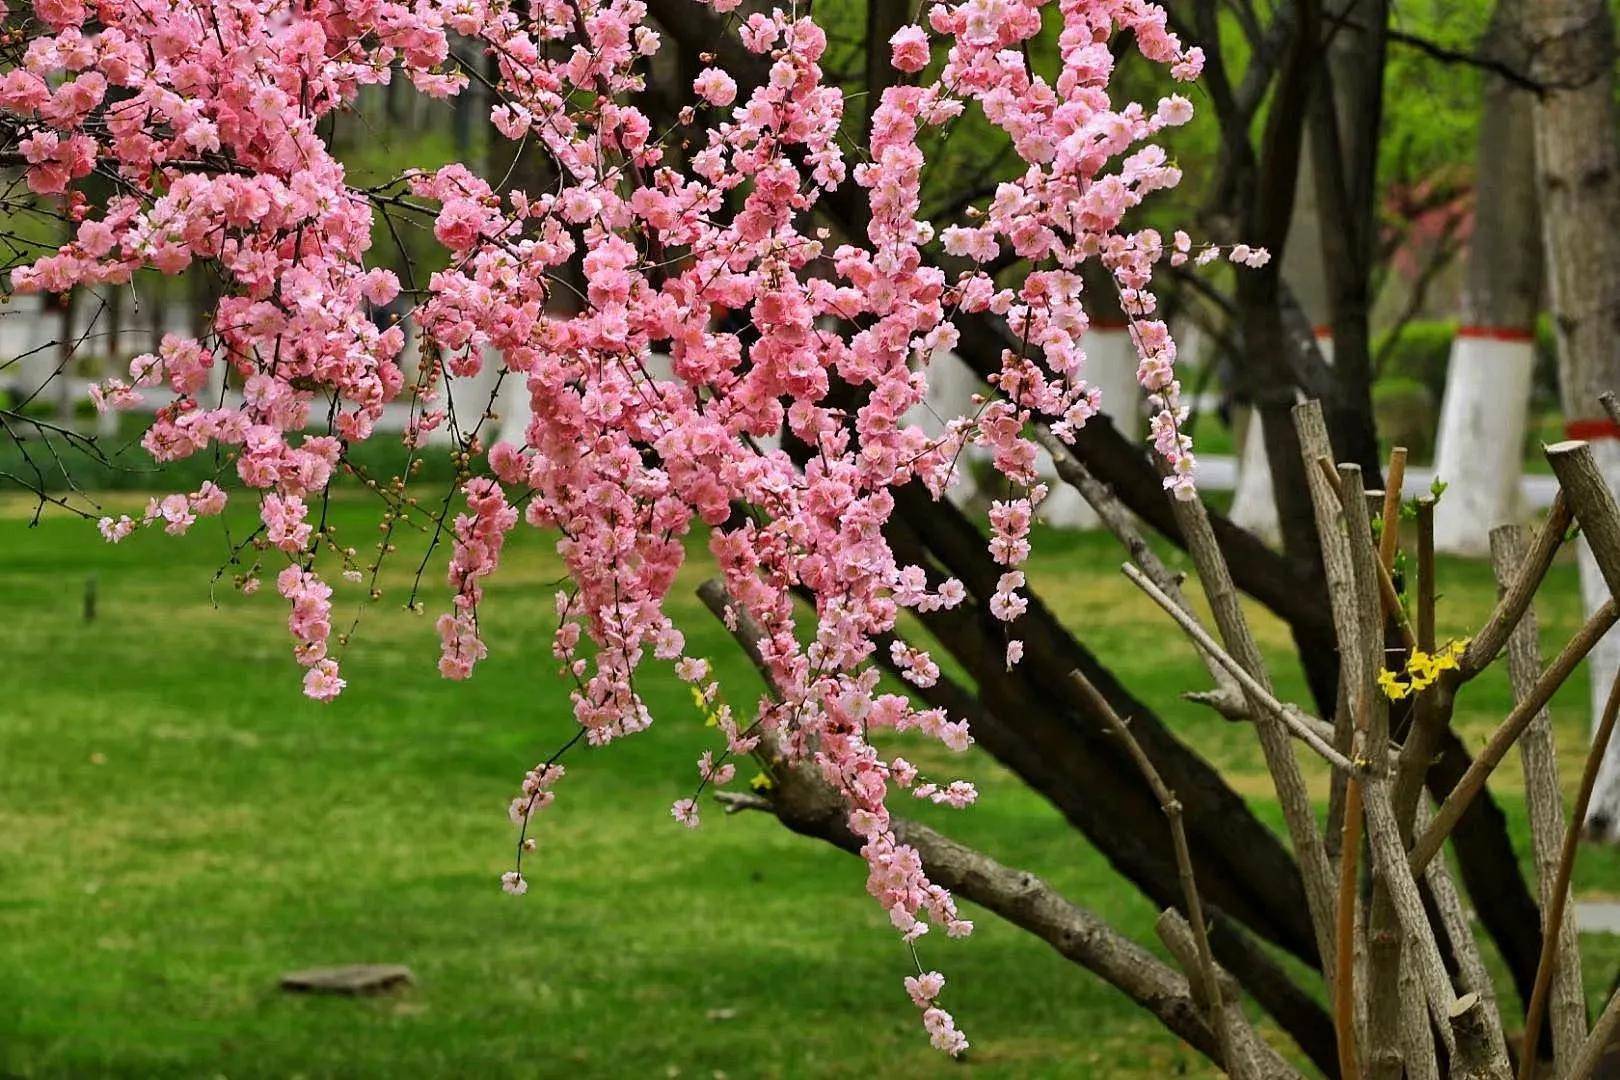 西宁人民公园春天的美景既是一首诗,也是一幅画,公园内空气清新